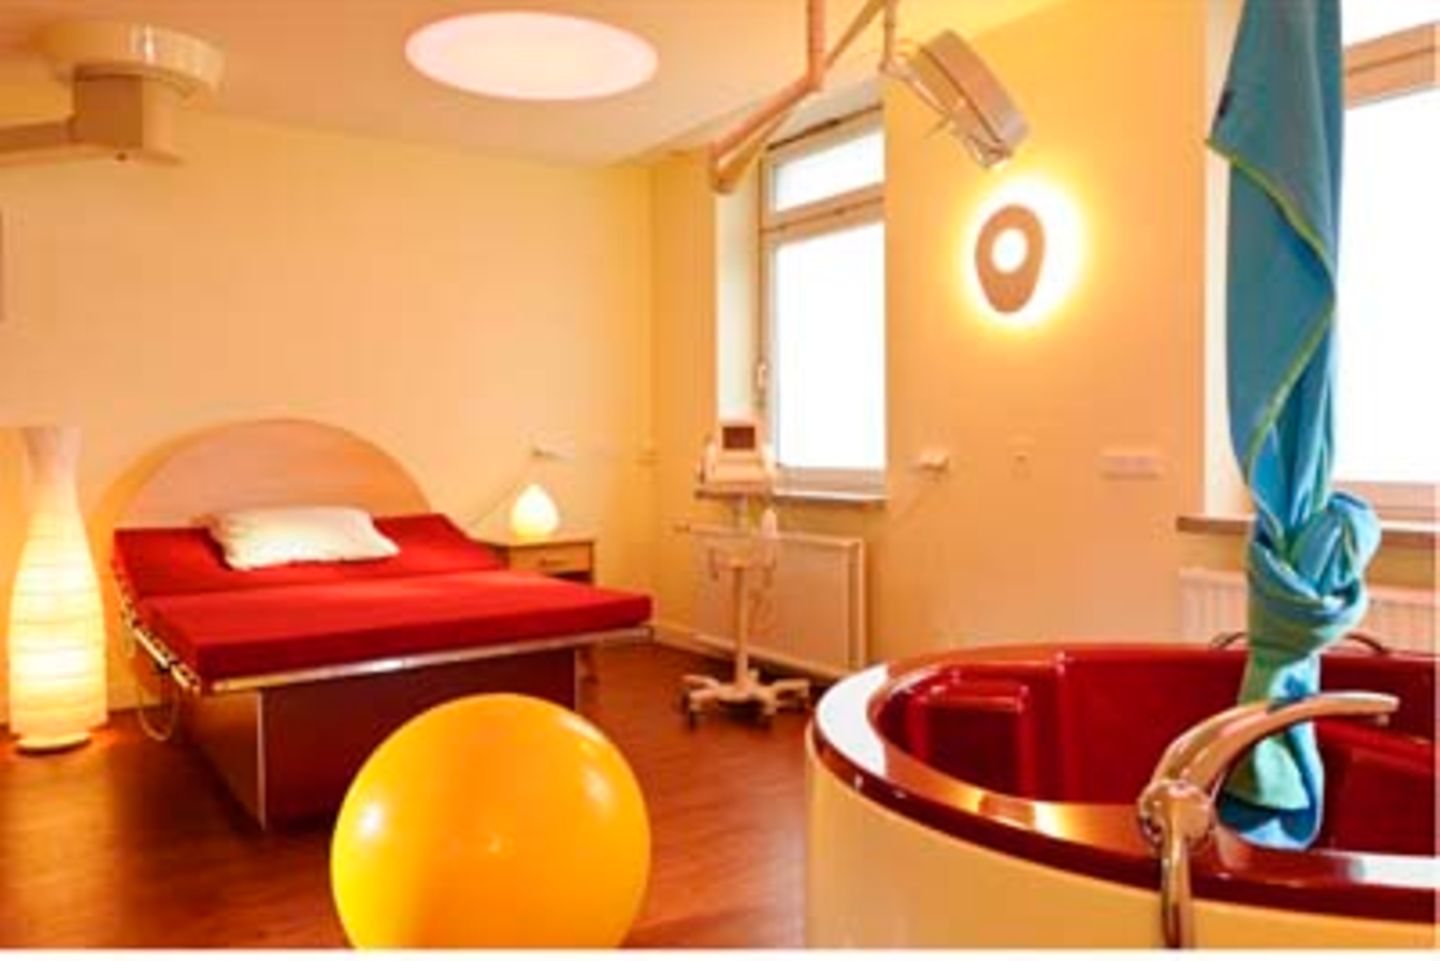 Entbindungsbett von "Parentis" in der Asklepios Klinik Nord - Heidberg in Hamburg